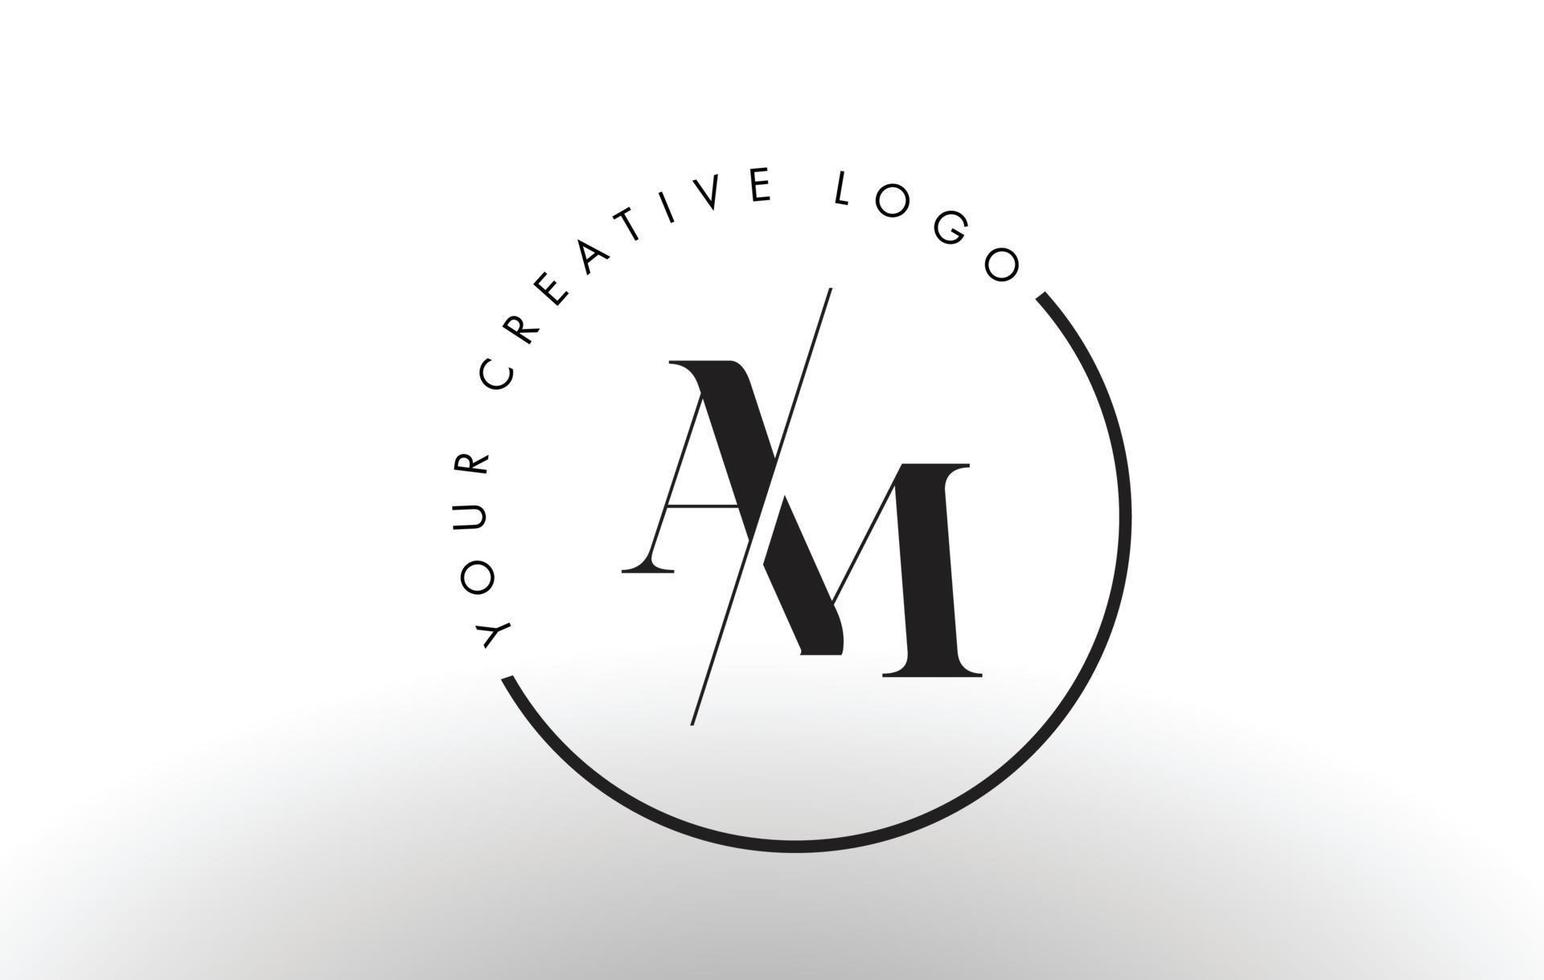 Sou design de logotipo de carta com serifa com corte cruzado criativo. vetor